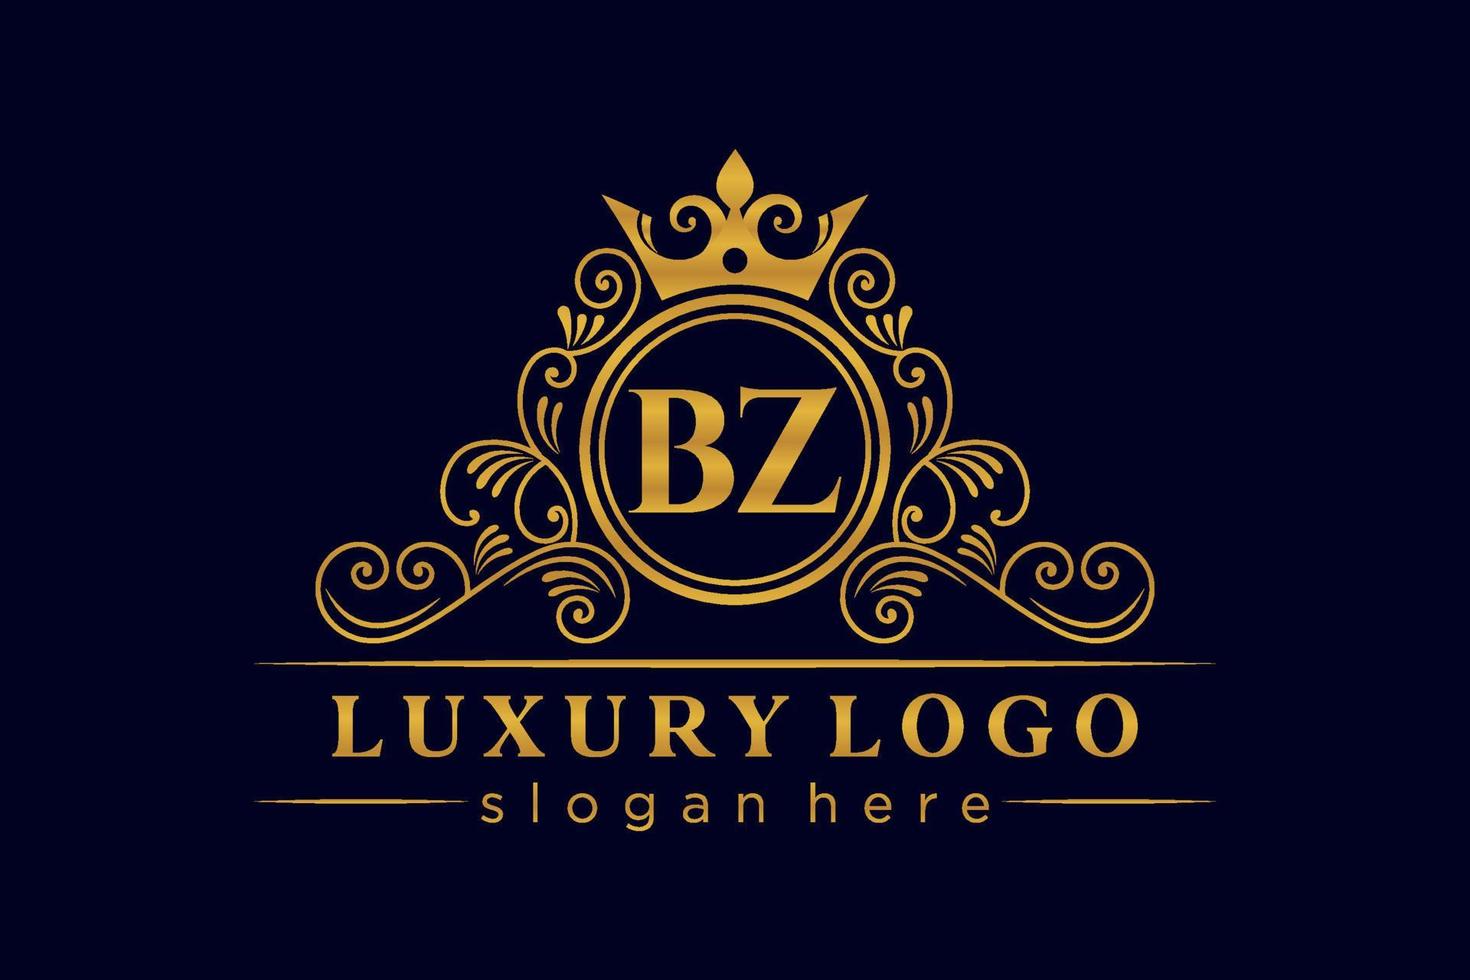 bz letra inicial oro caligráfico femenino floral dibujado a mano monograma heráldico antiguo estilo vintage diseño de logotipo de lujo vector premium